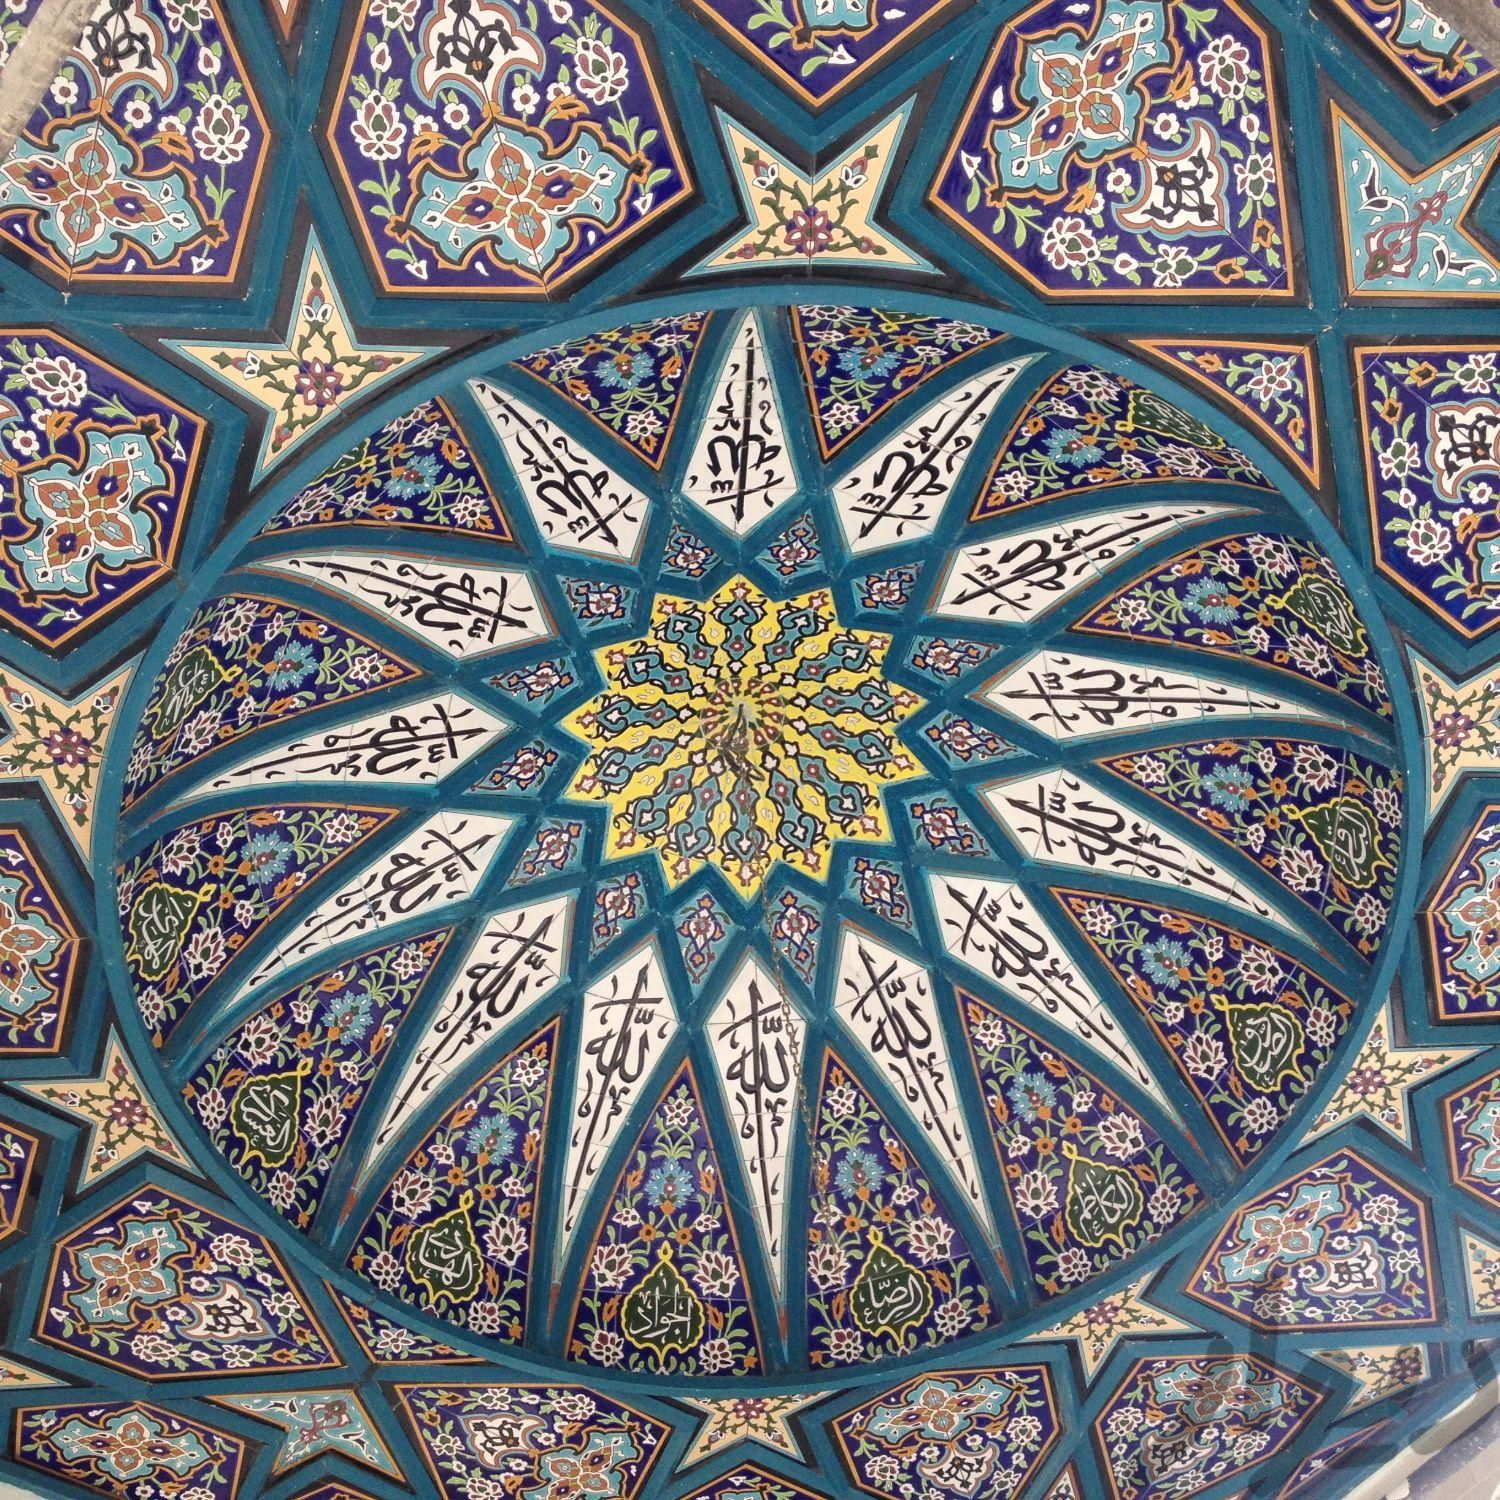 فروش کاشی مسجدی در اصفهان - آتوسام